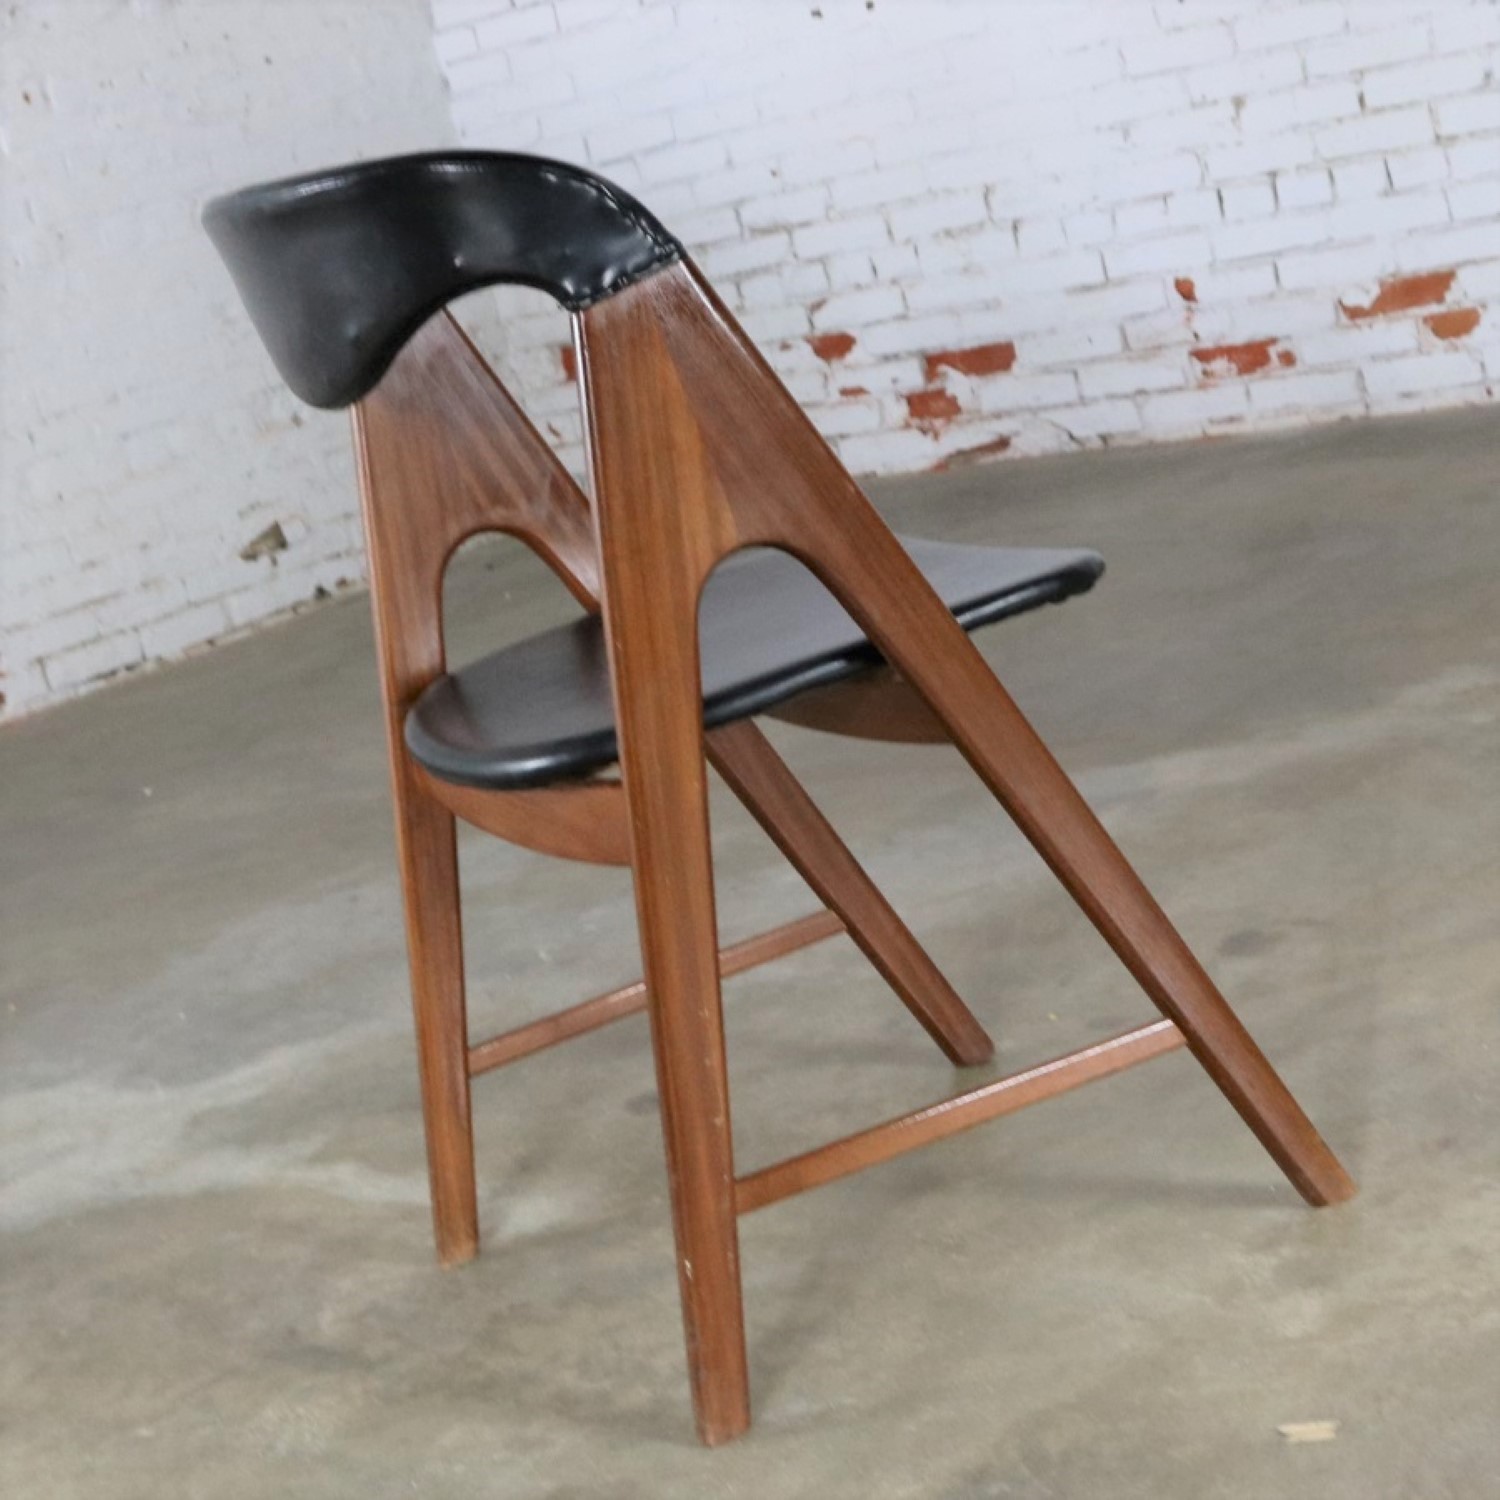 Small A Frame Scandinavian Modern Side Chair Manner of Kai Kristiansen Compass Chair